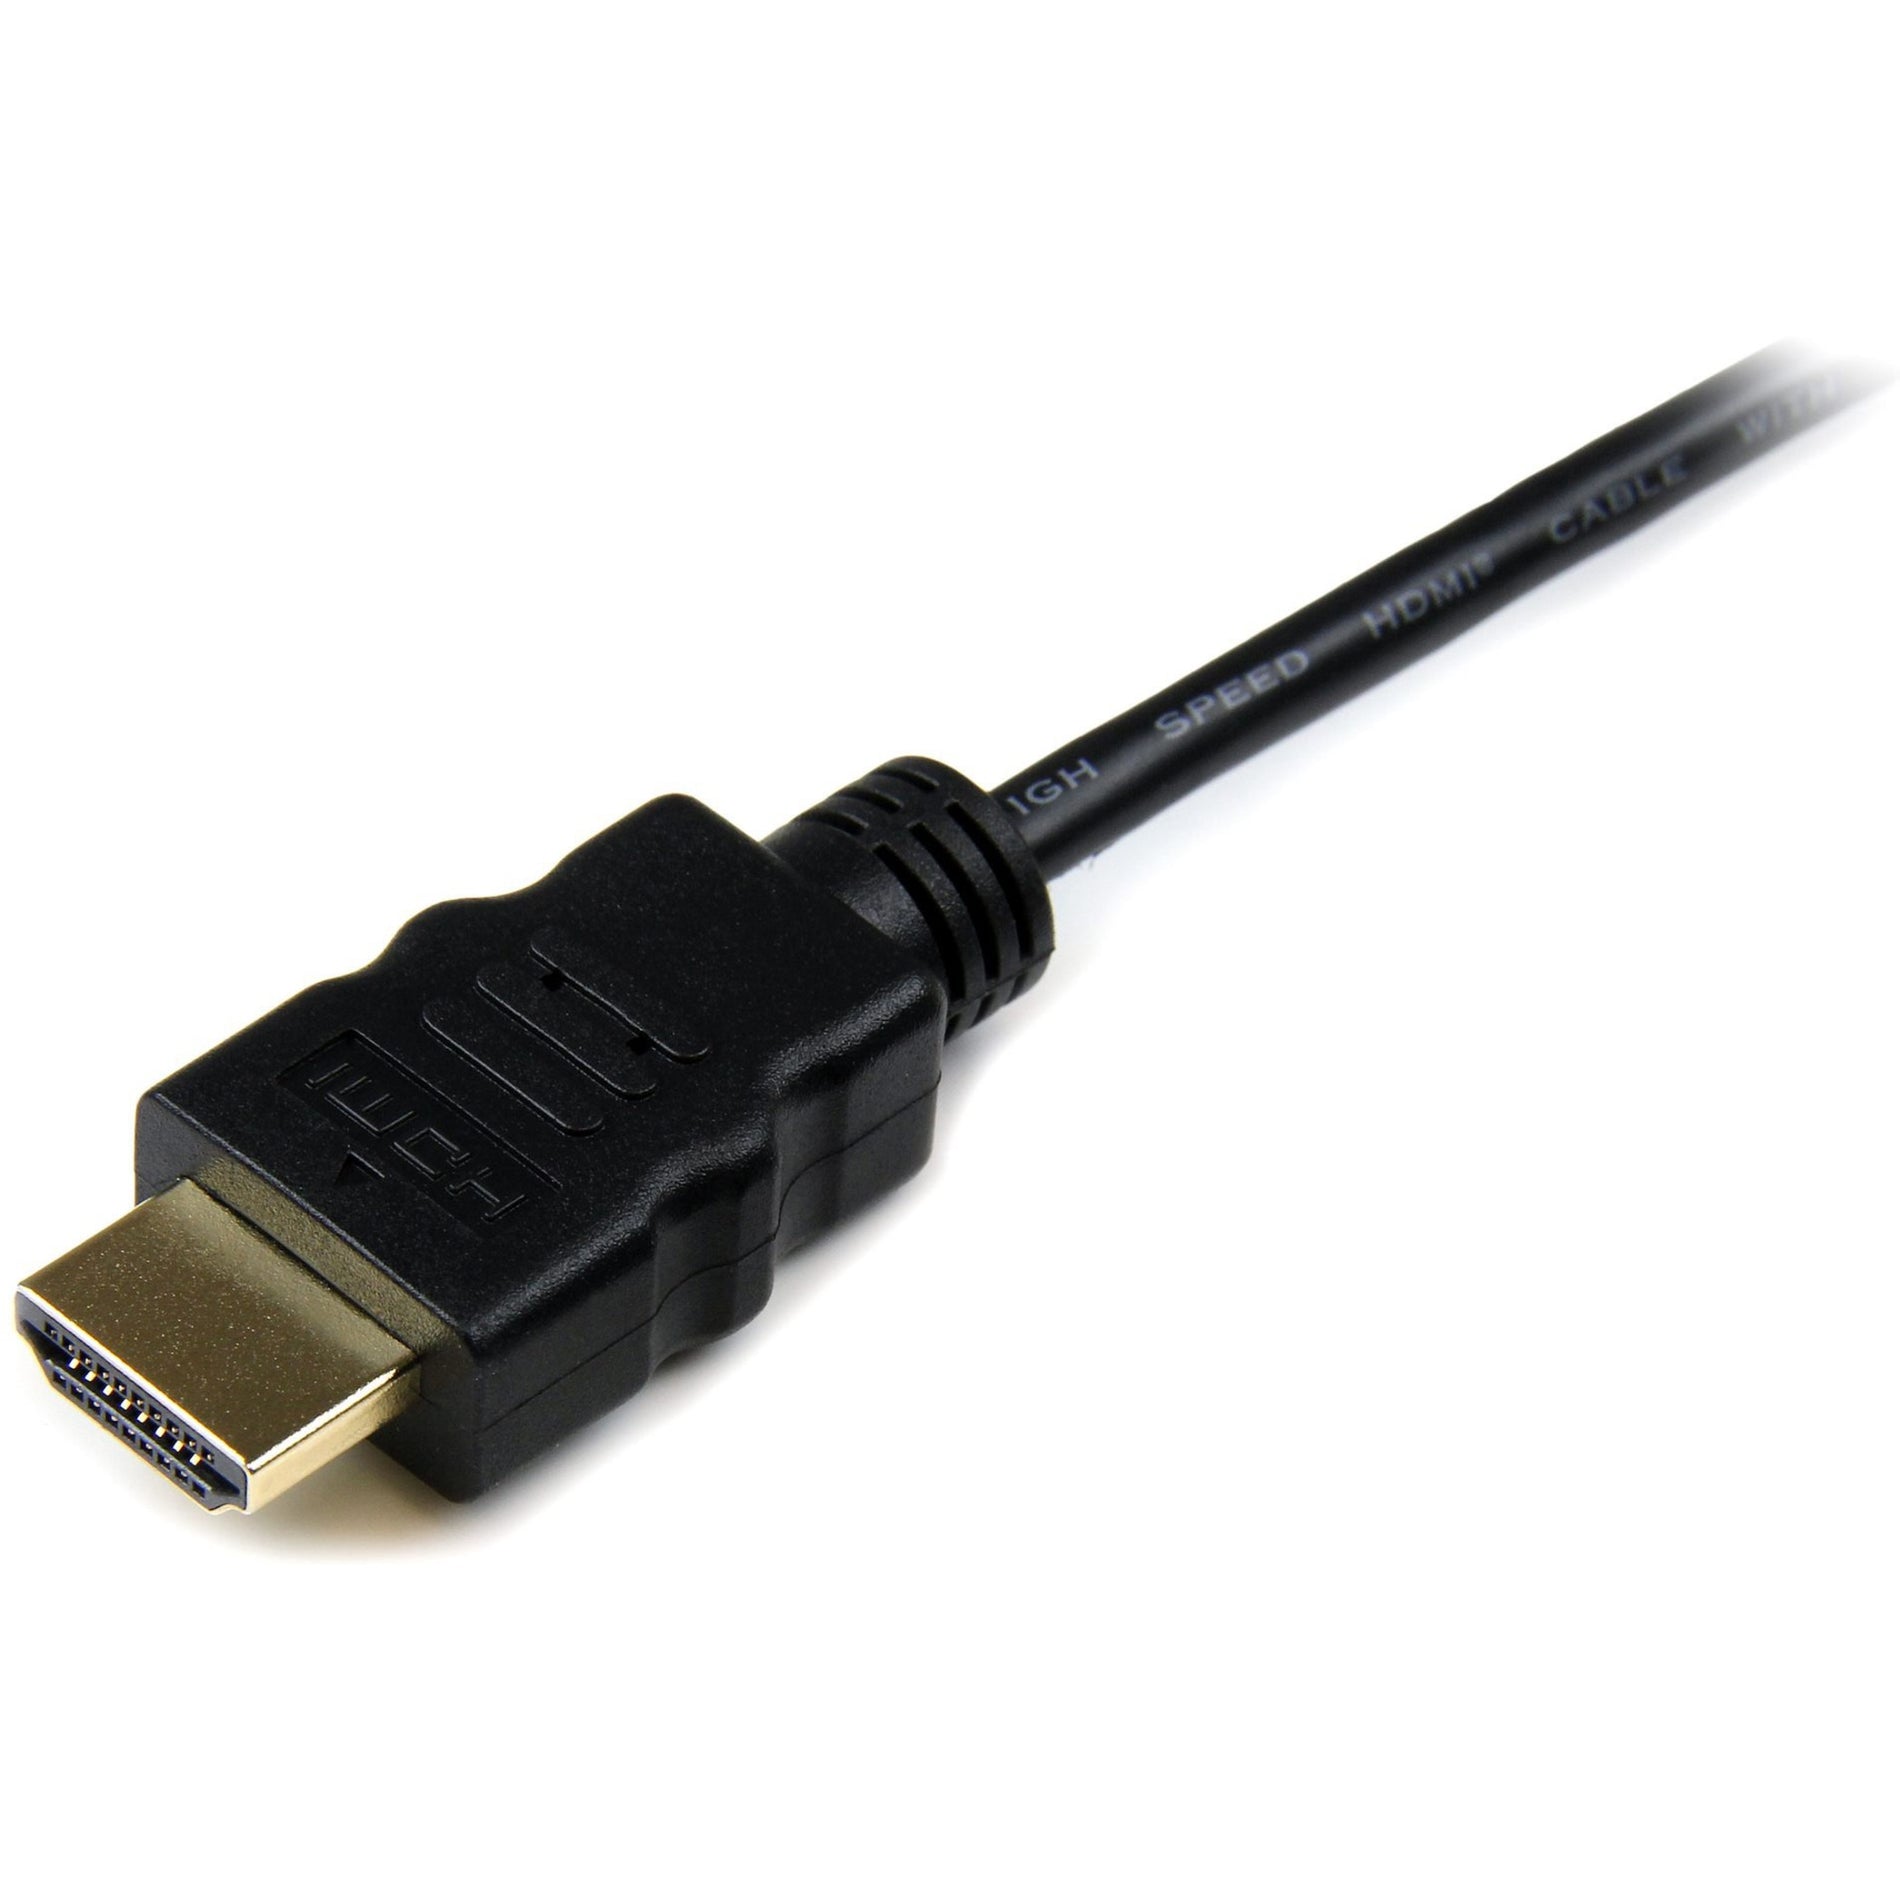 كبل HDMI عالي السرعة بطول 6 أقدام مع إيثرنت، HDMI إلى HDMI مايكرو - ذكر/ذكر من شركة StarTech.com